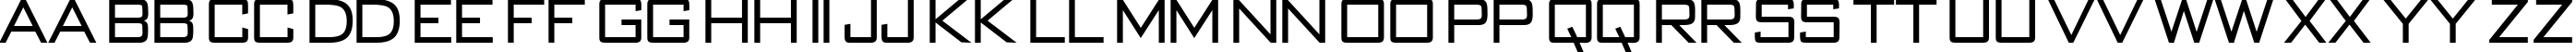 Пример написания английского алфавита шрифтом BankGothic-Regular DB